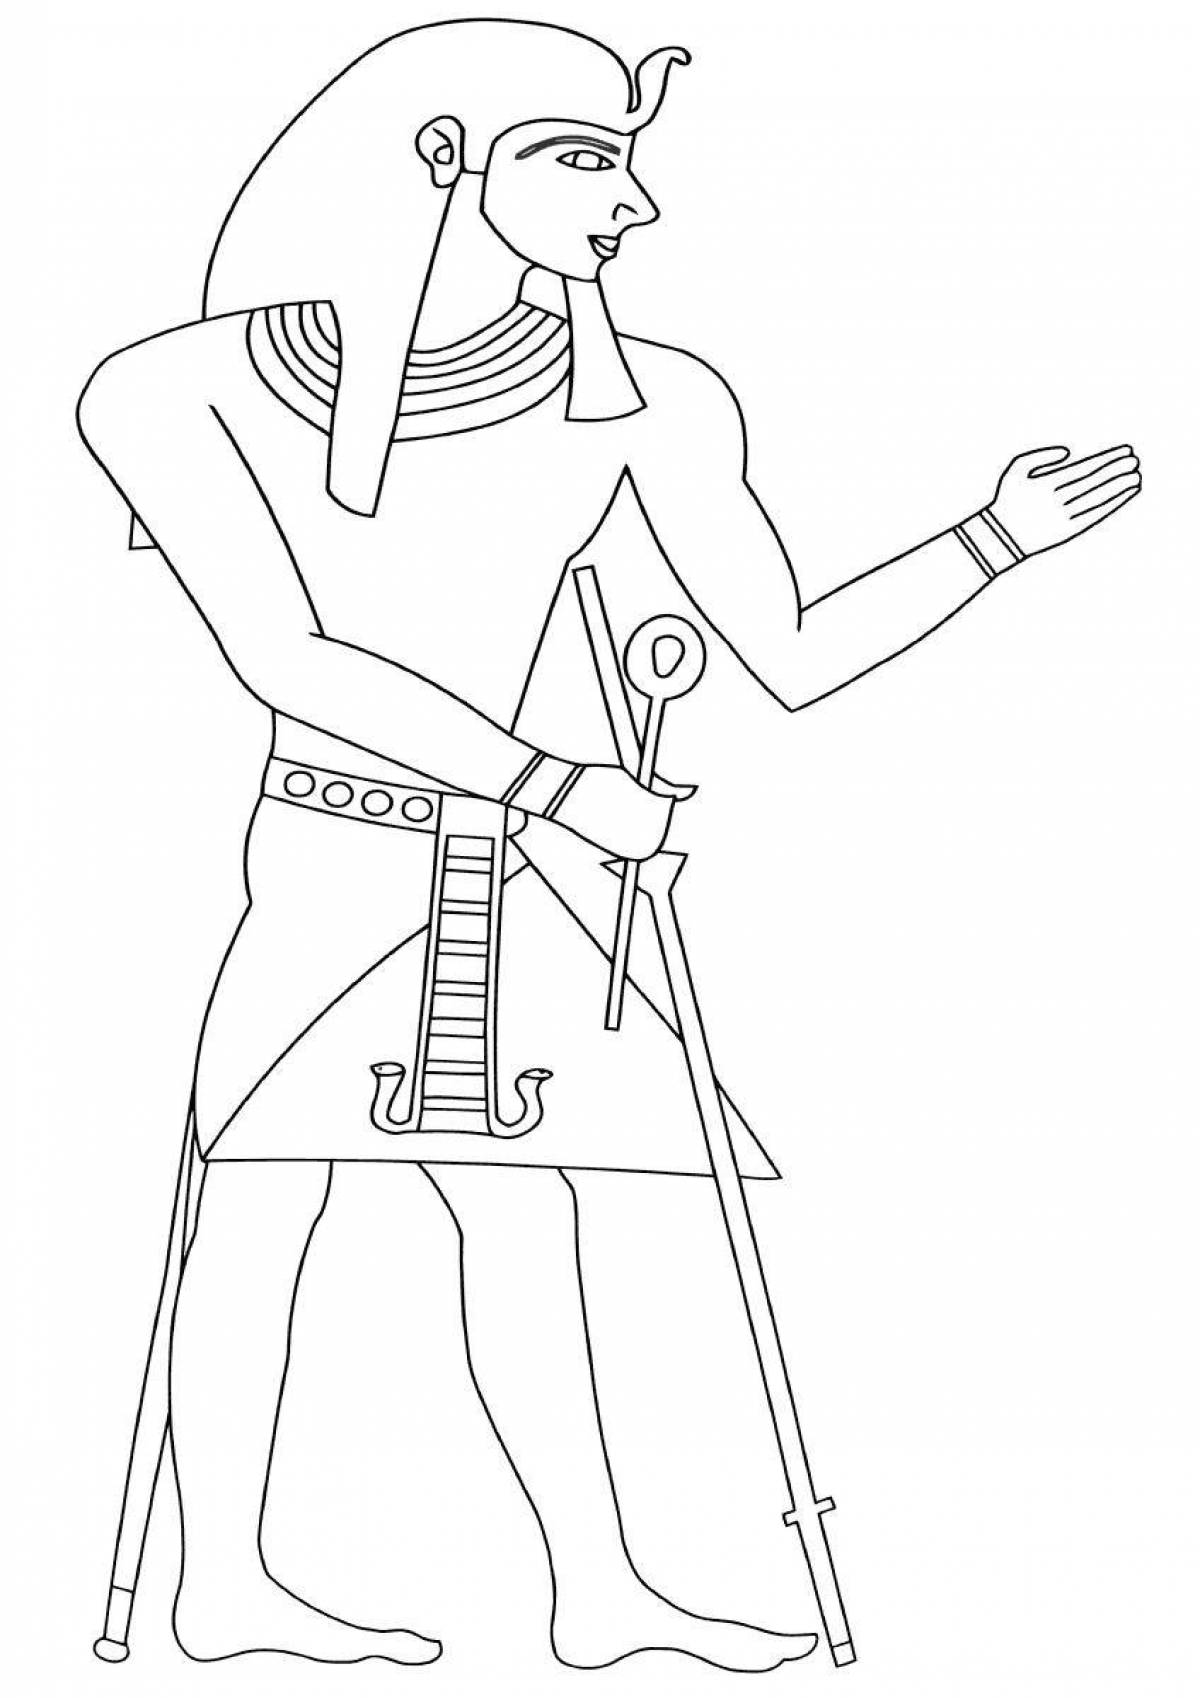 Фараон древнего Египта раскрашенный